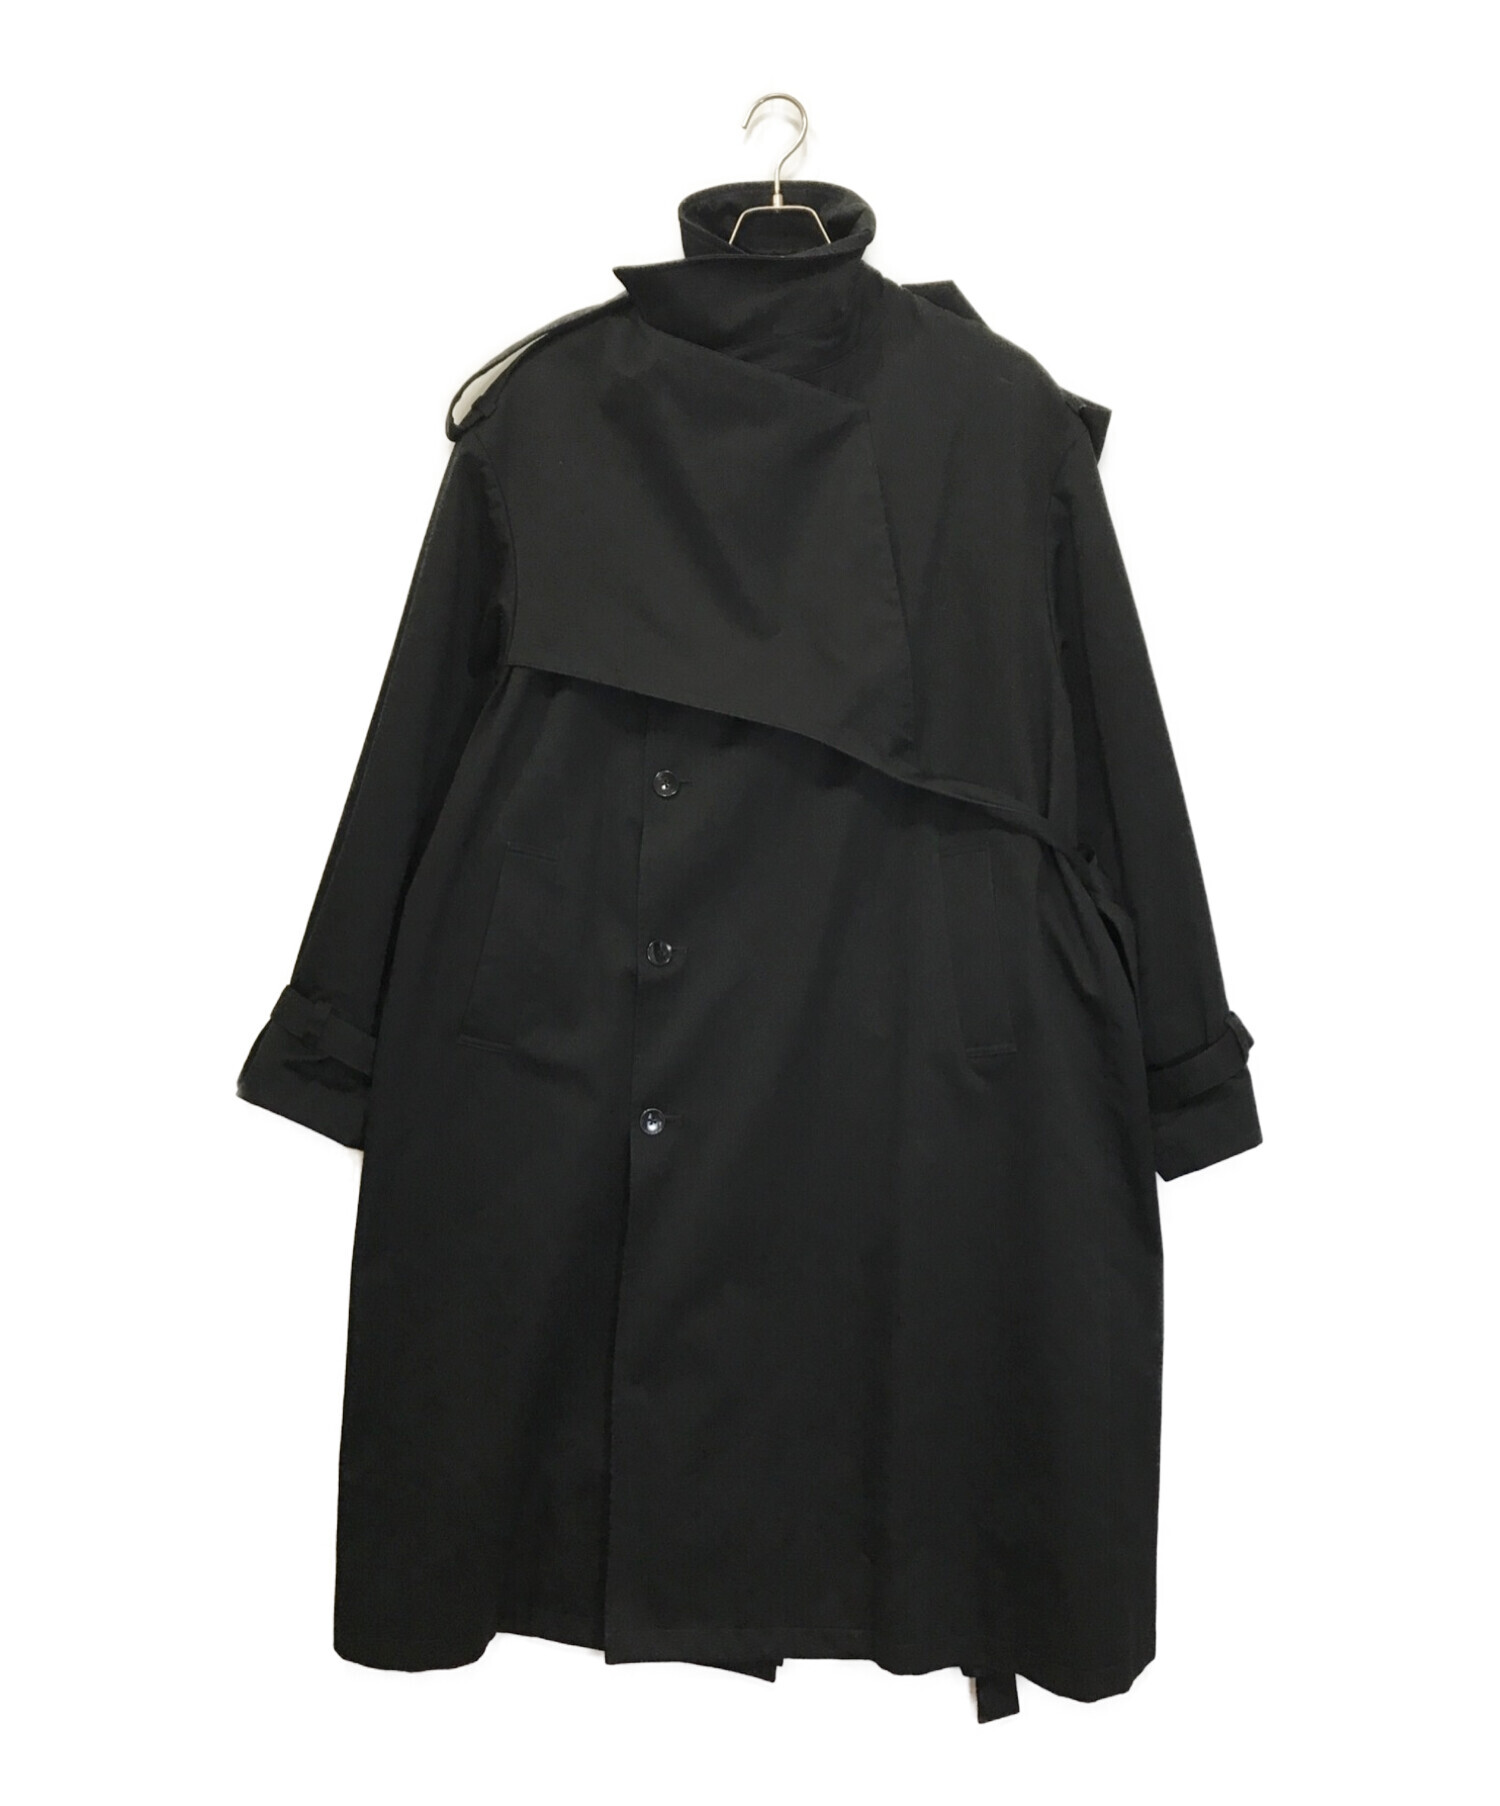 keisuke yoshida trench coat Black